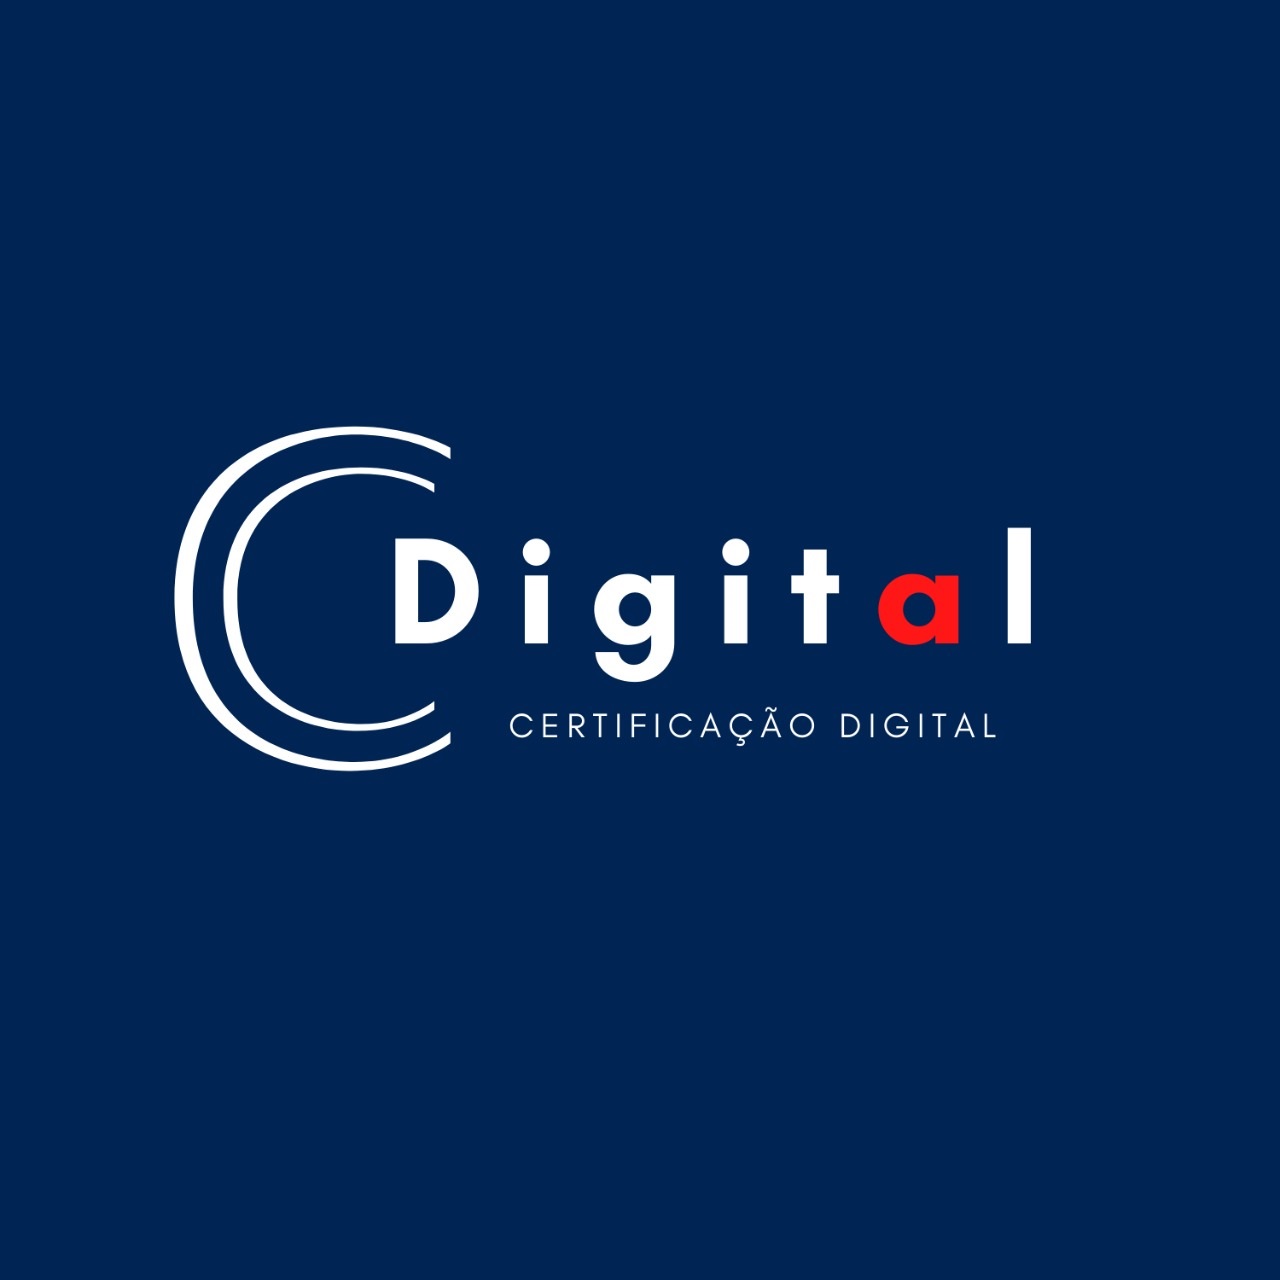 Logotipo do parceiro AR Cdigital &#8211; Ponta Grossa &#8211; 15%